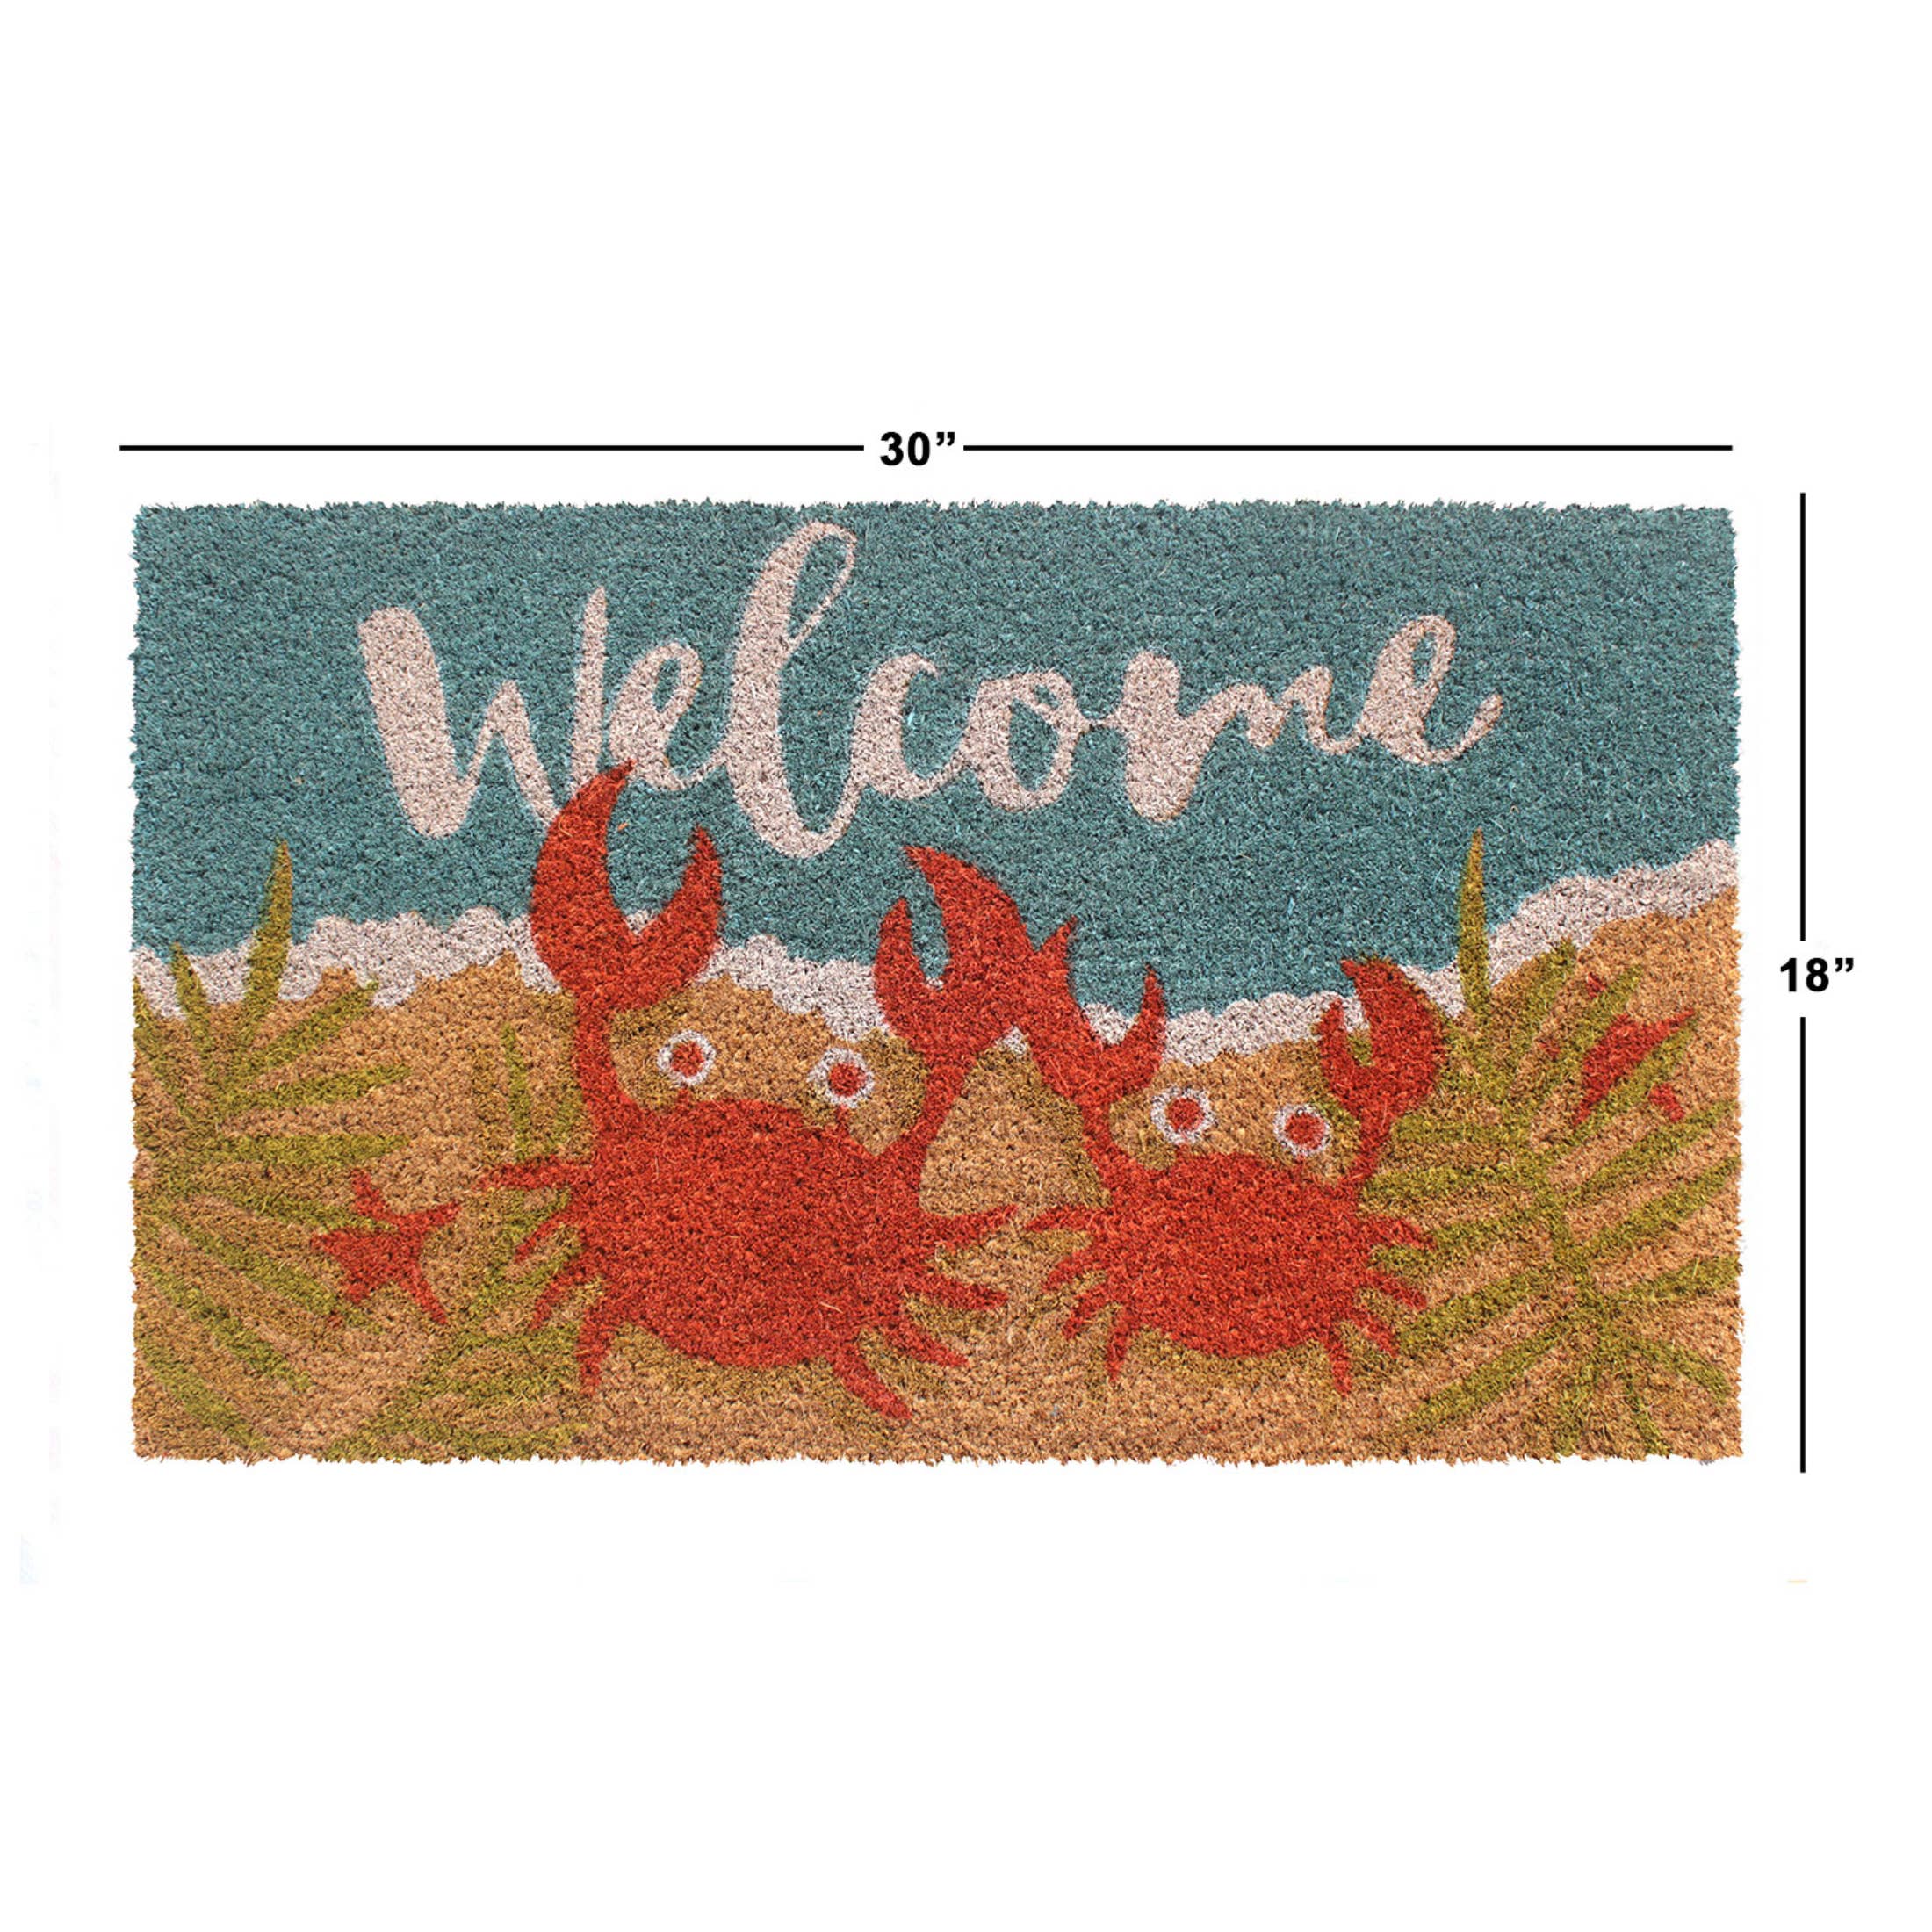 Doormat - Welcome Crabs 18"x30" Rug